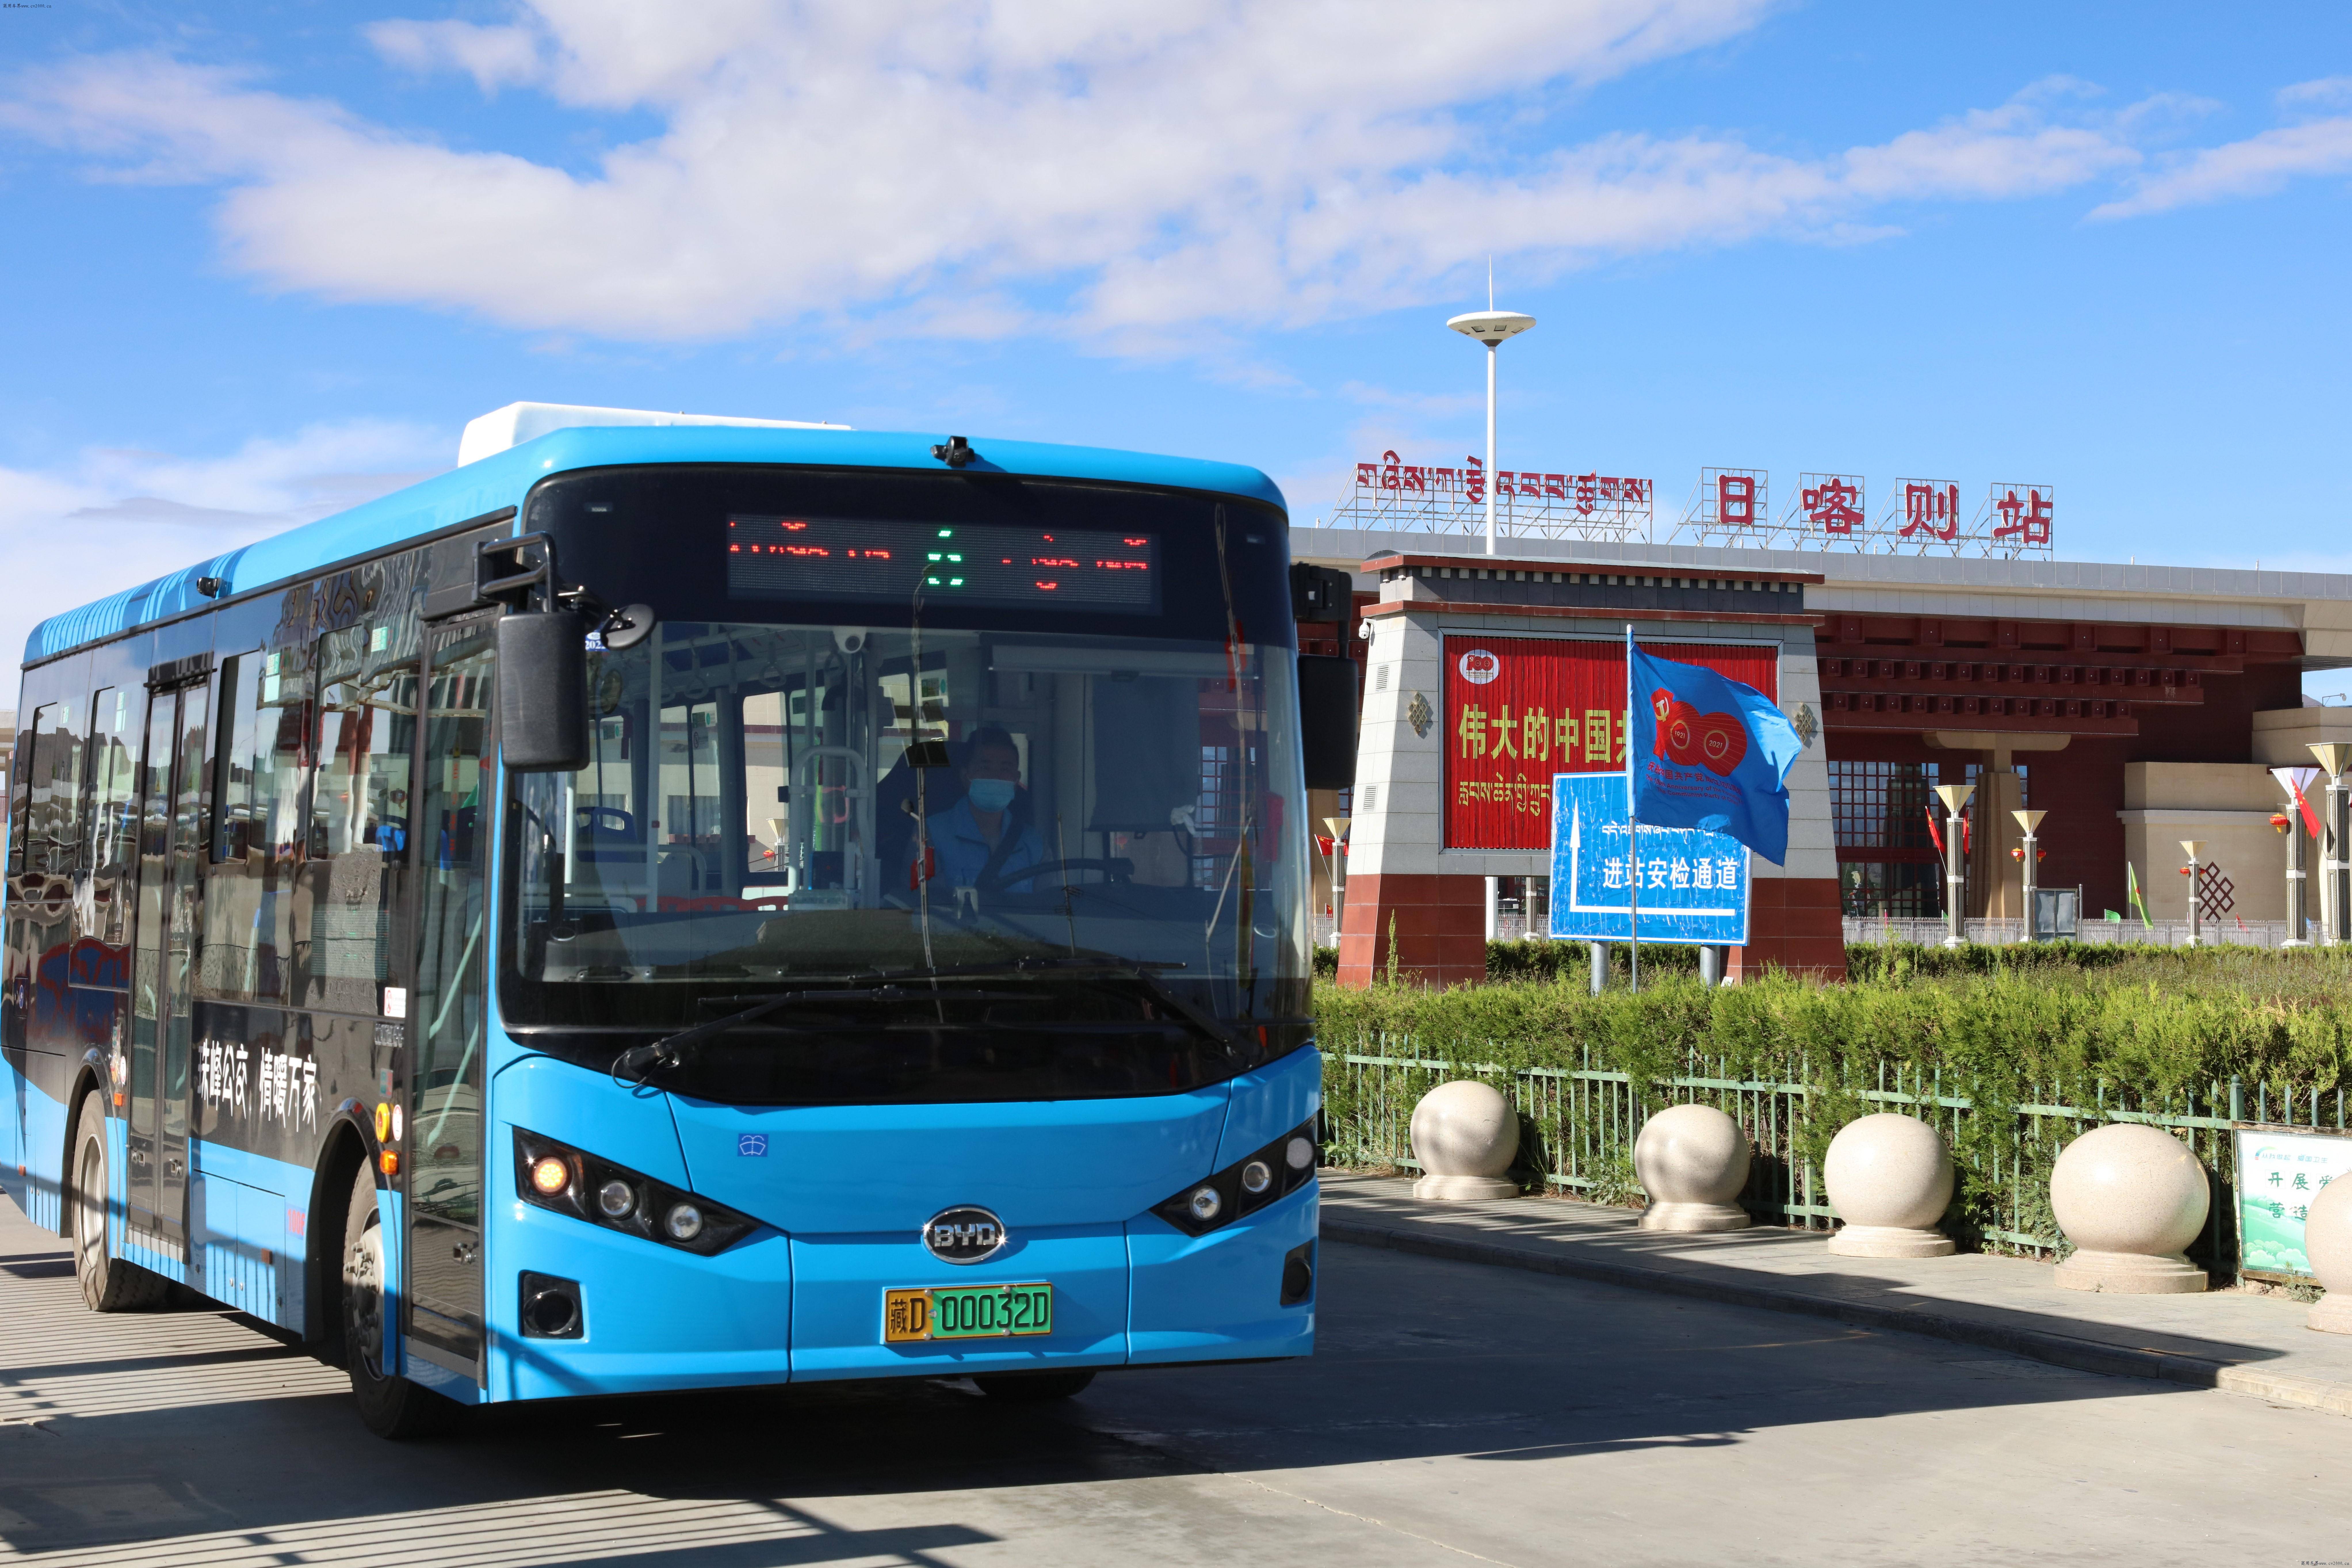 绿色科技护航生态比亚迪打造西藏高原纯电动客车第一品牌